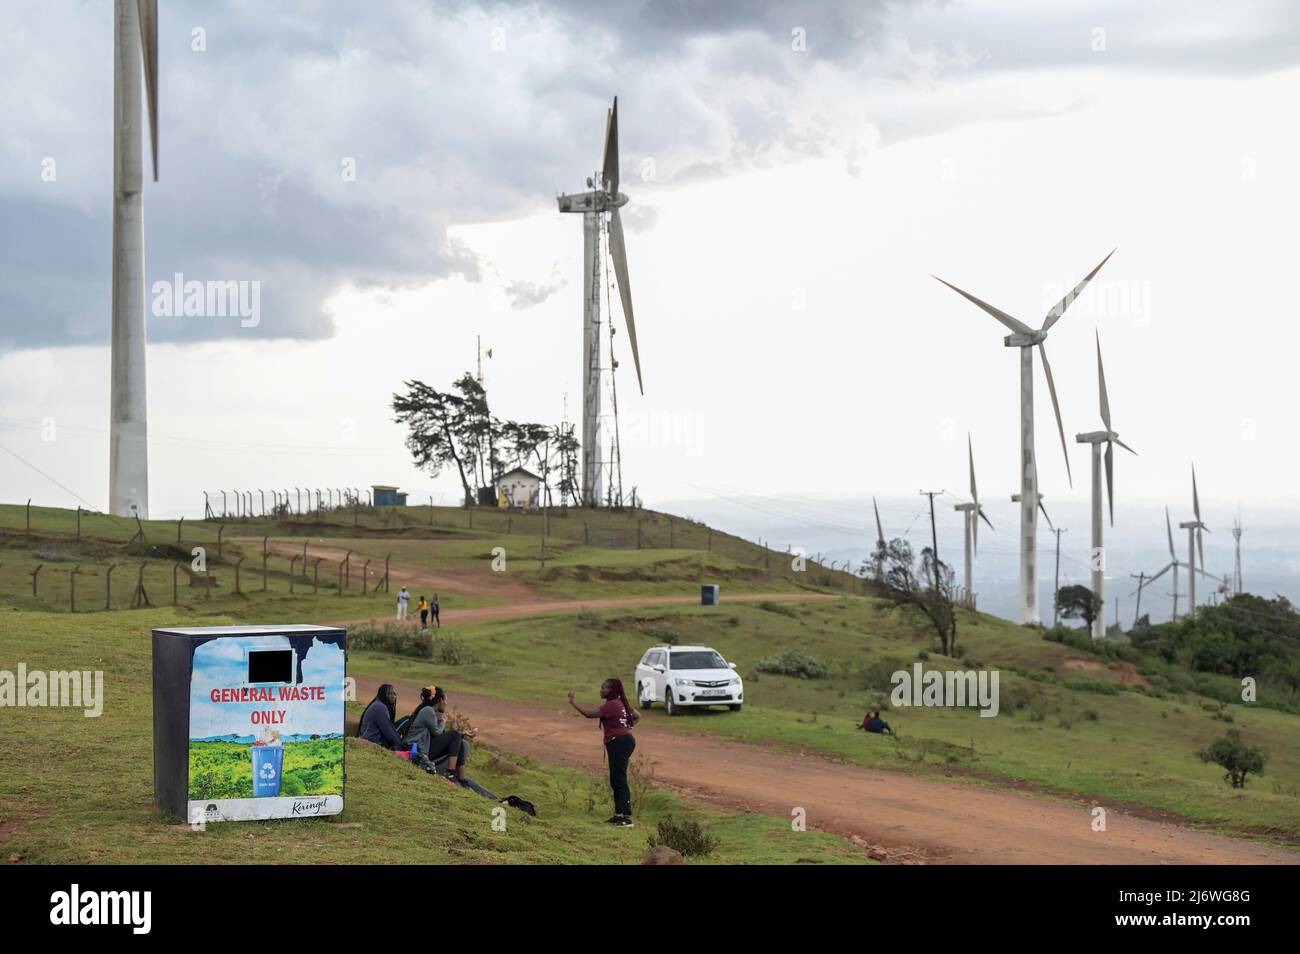 KENIA, Nairobi, Ngong Hills, 25,5 MW Windkraftwerk mit Gamesa Windkraftanlagen, Eigentum und Betrieb der KENGEN Kenya Electricity Generating Company, Gamesa ist Teil des Unternehmens Siemens Gamesa Renewable Energy/KENIA, Ngong Hills Windpark, Betreiber KenGen Kenya Electricity Generating Company mit Gamesa Windkraftanlagen Stockfoto